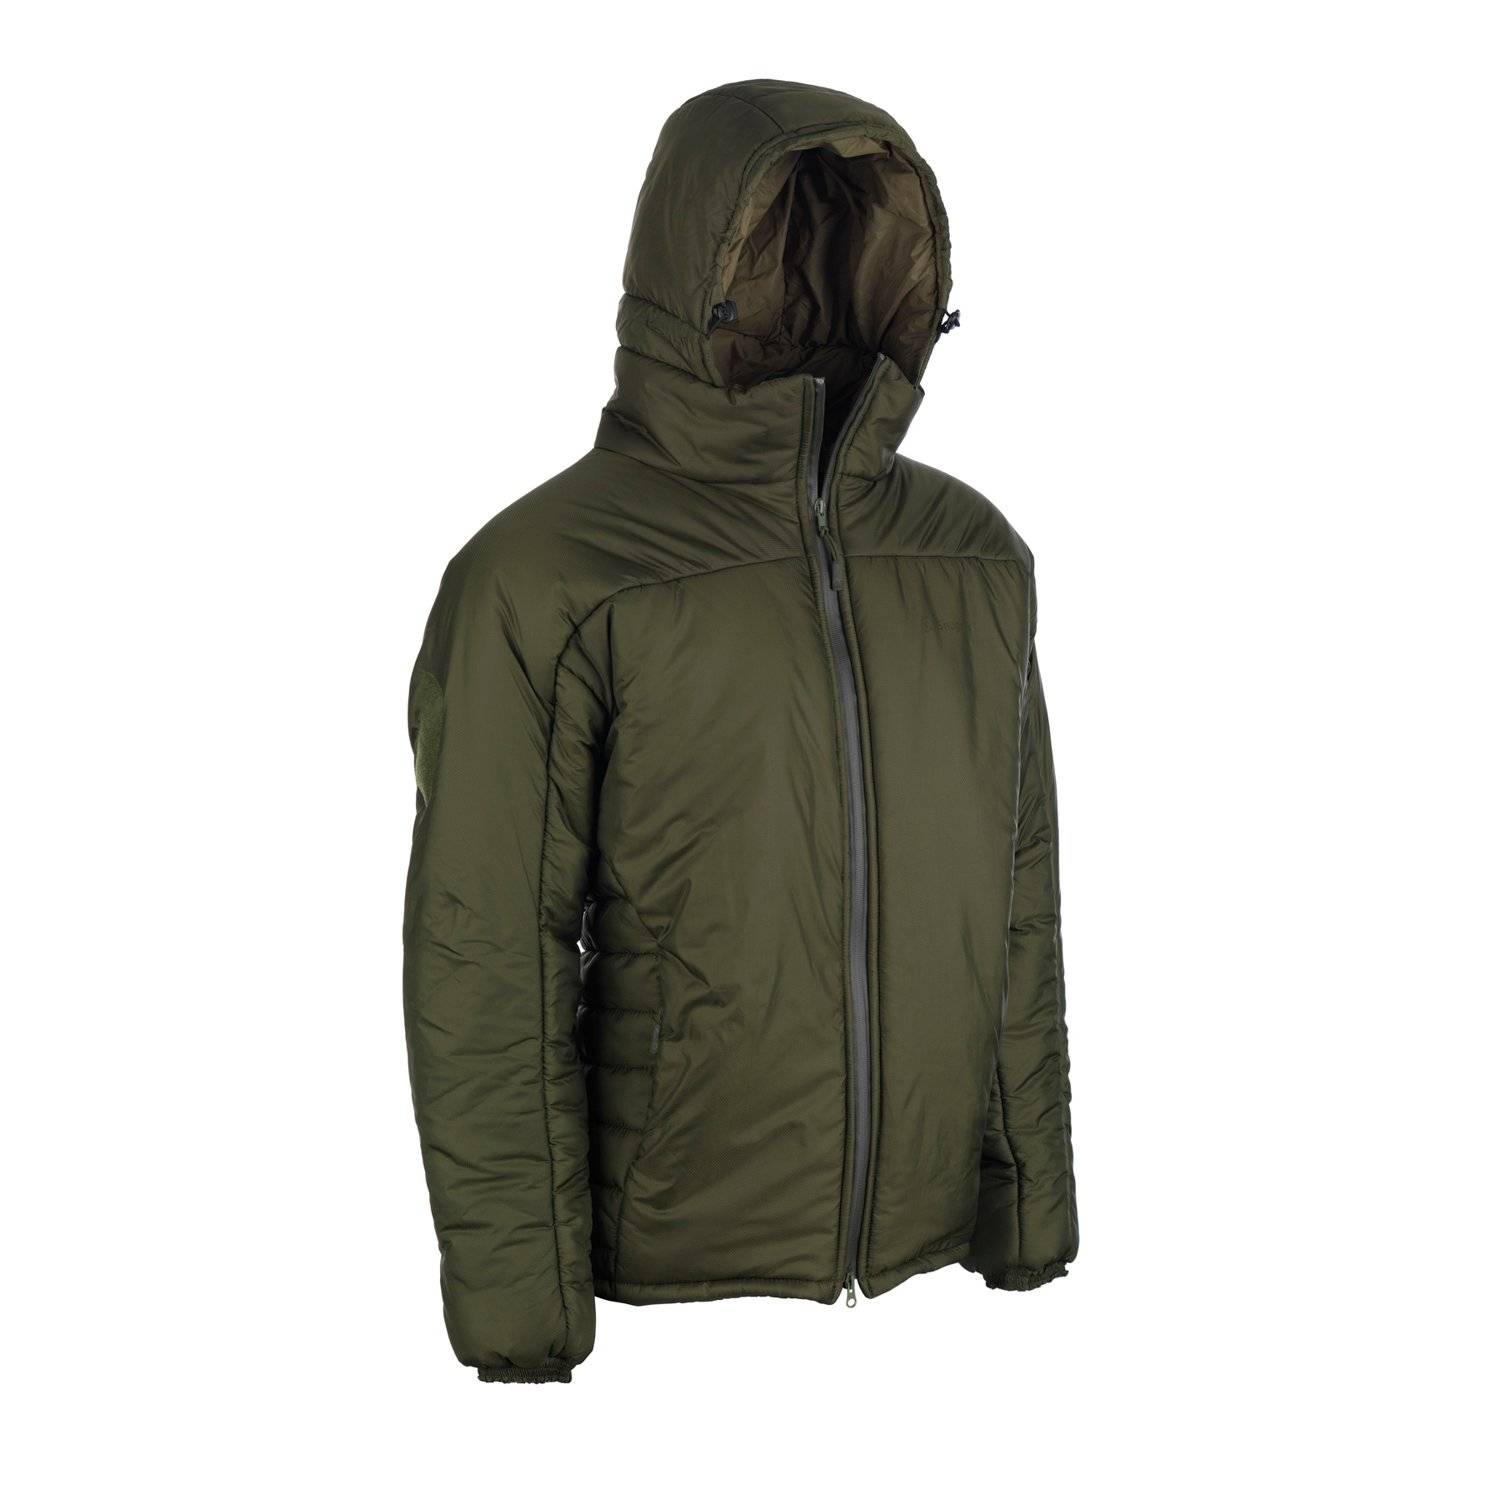 Snugpak SJ-9 Softie Jacket | Winter Jackets for Men